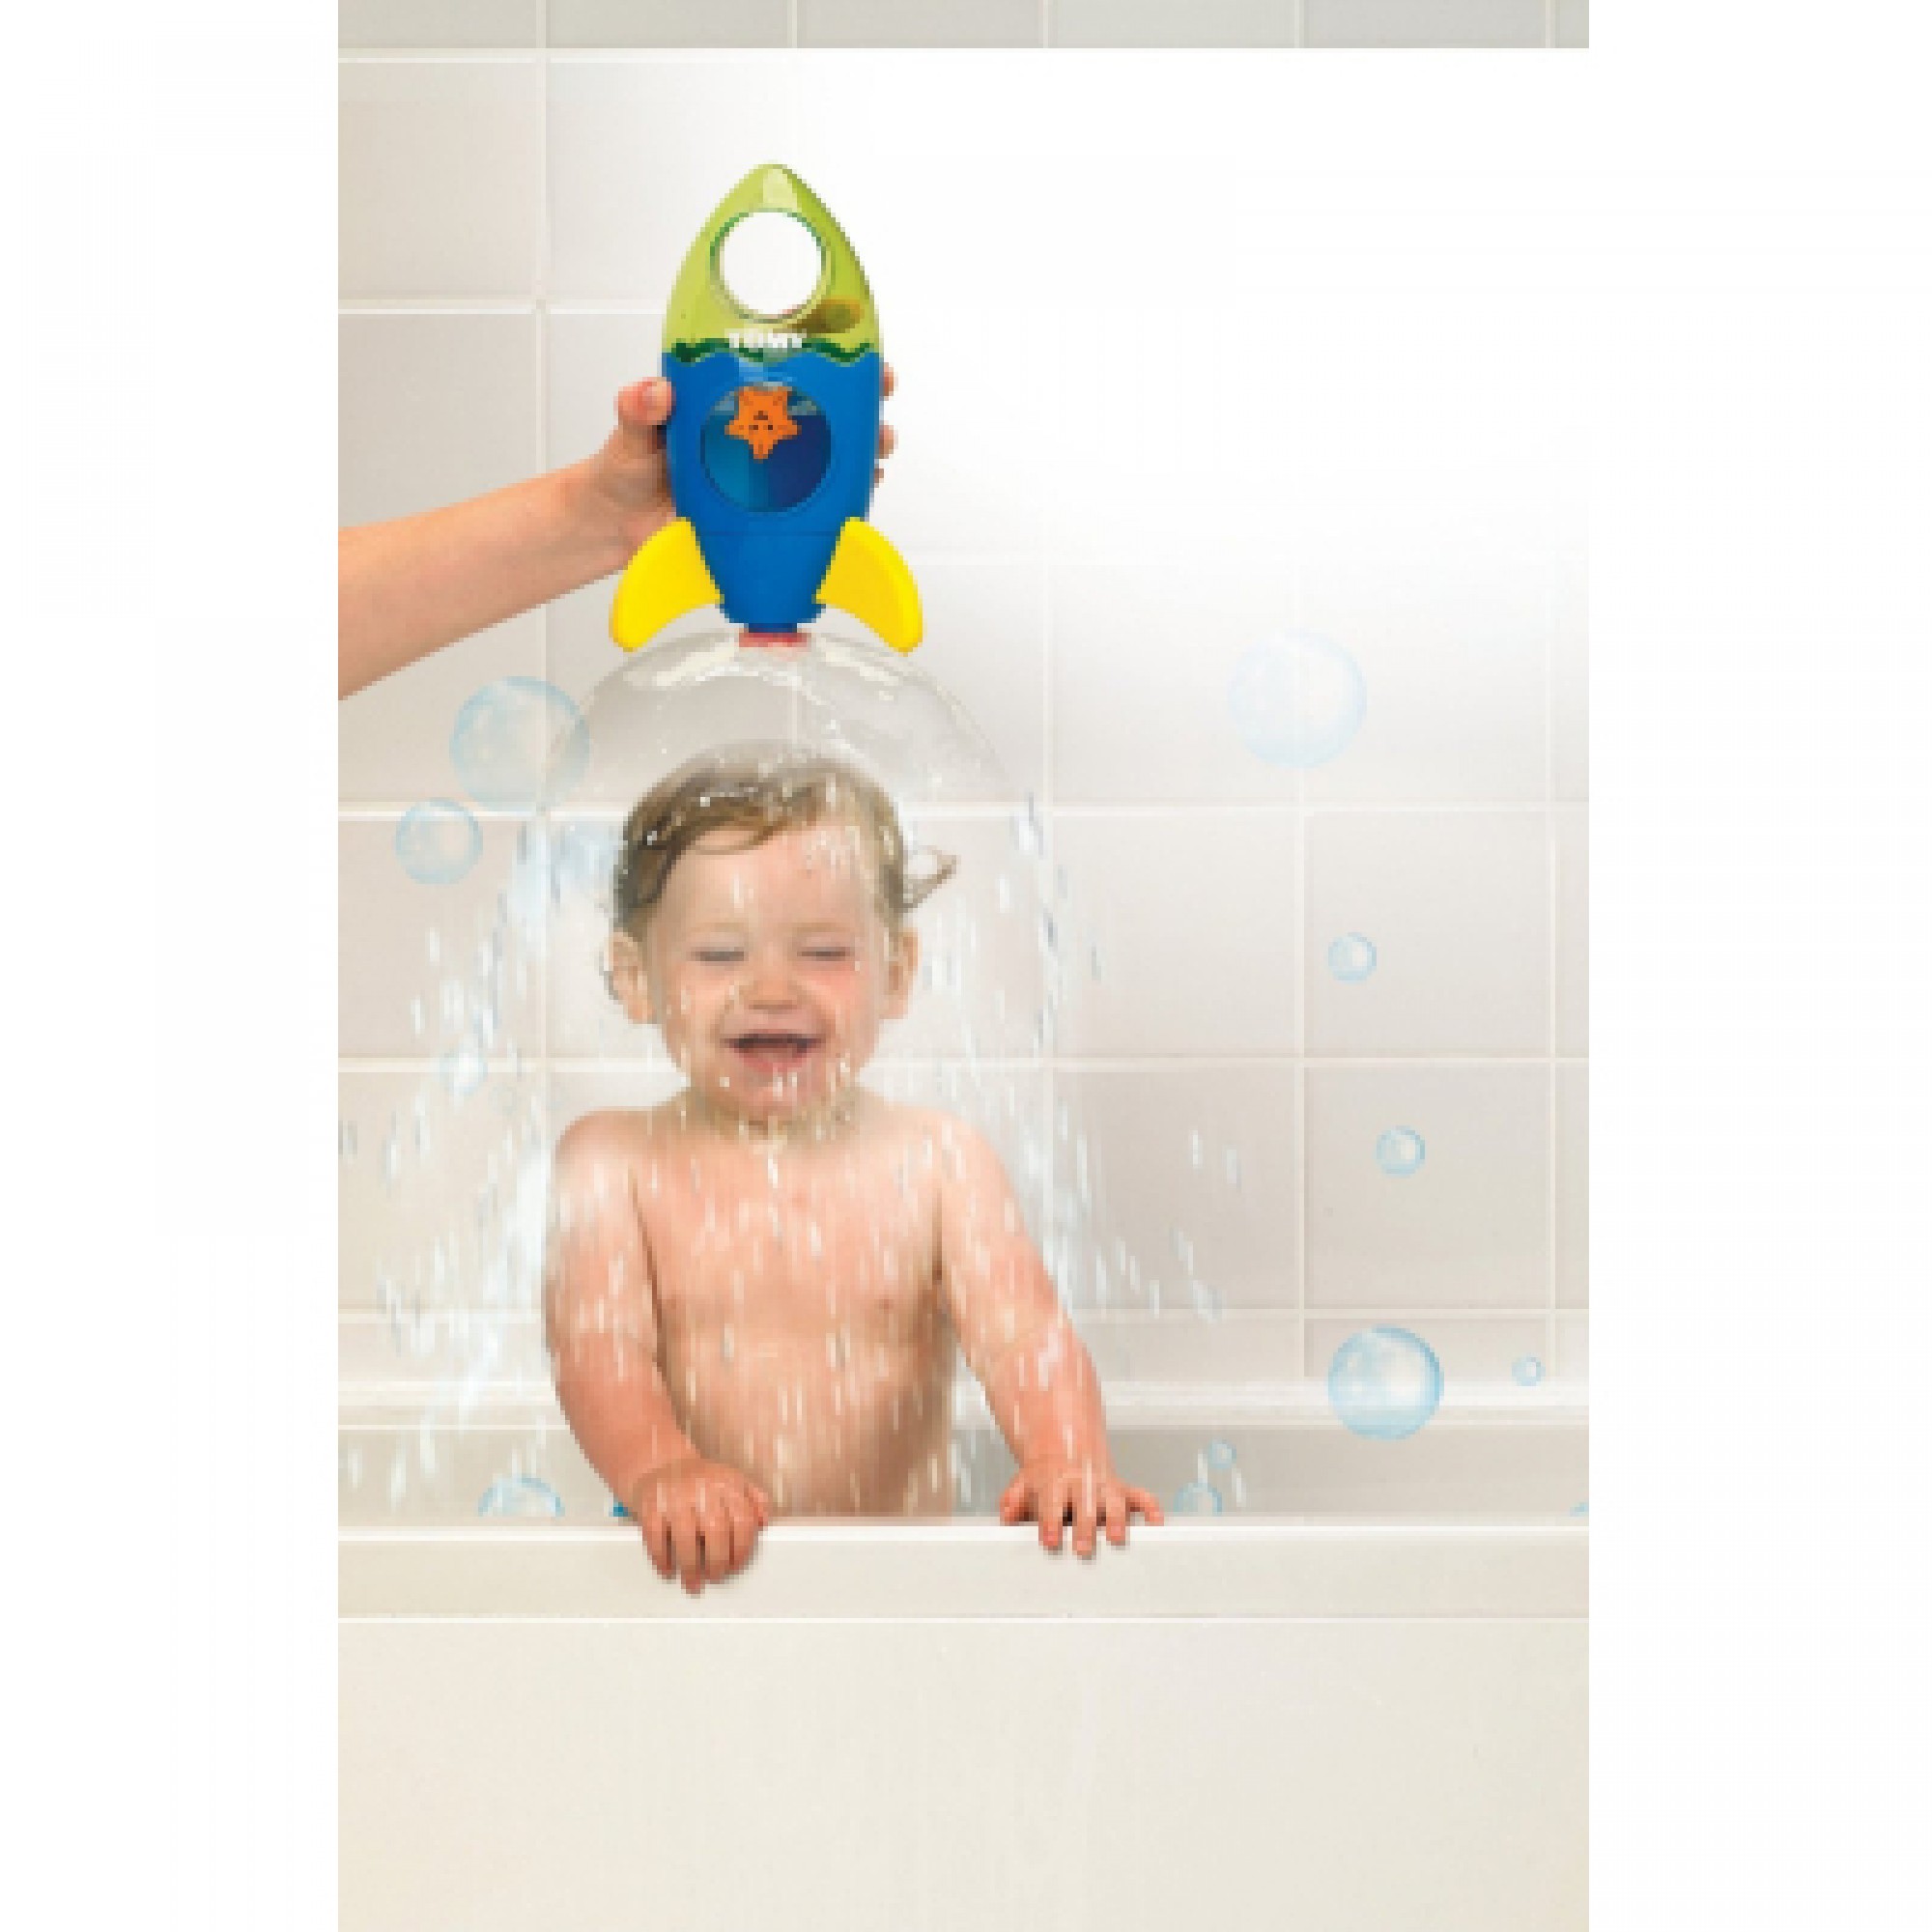 Іграшка для ванної Tomy Fountain Rocket (T72357)